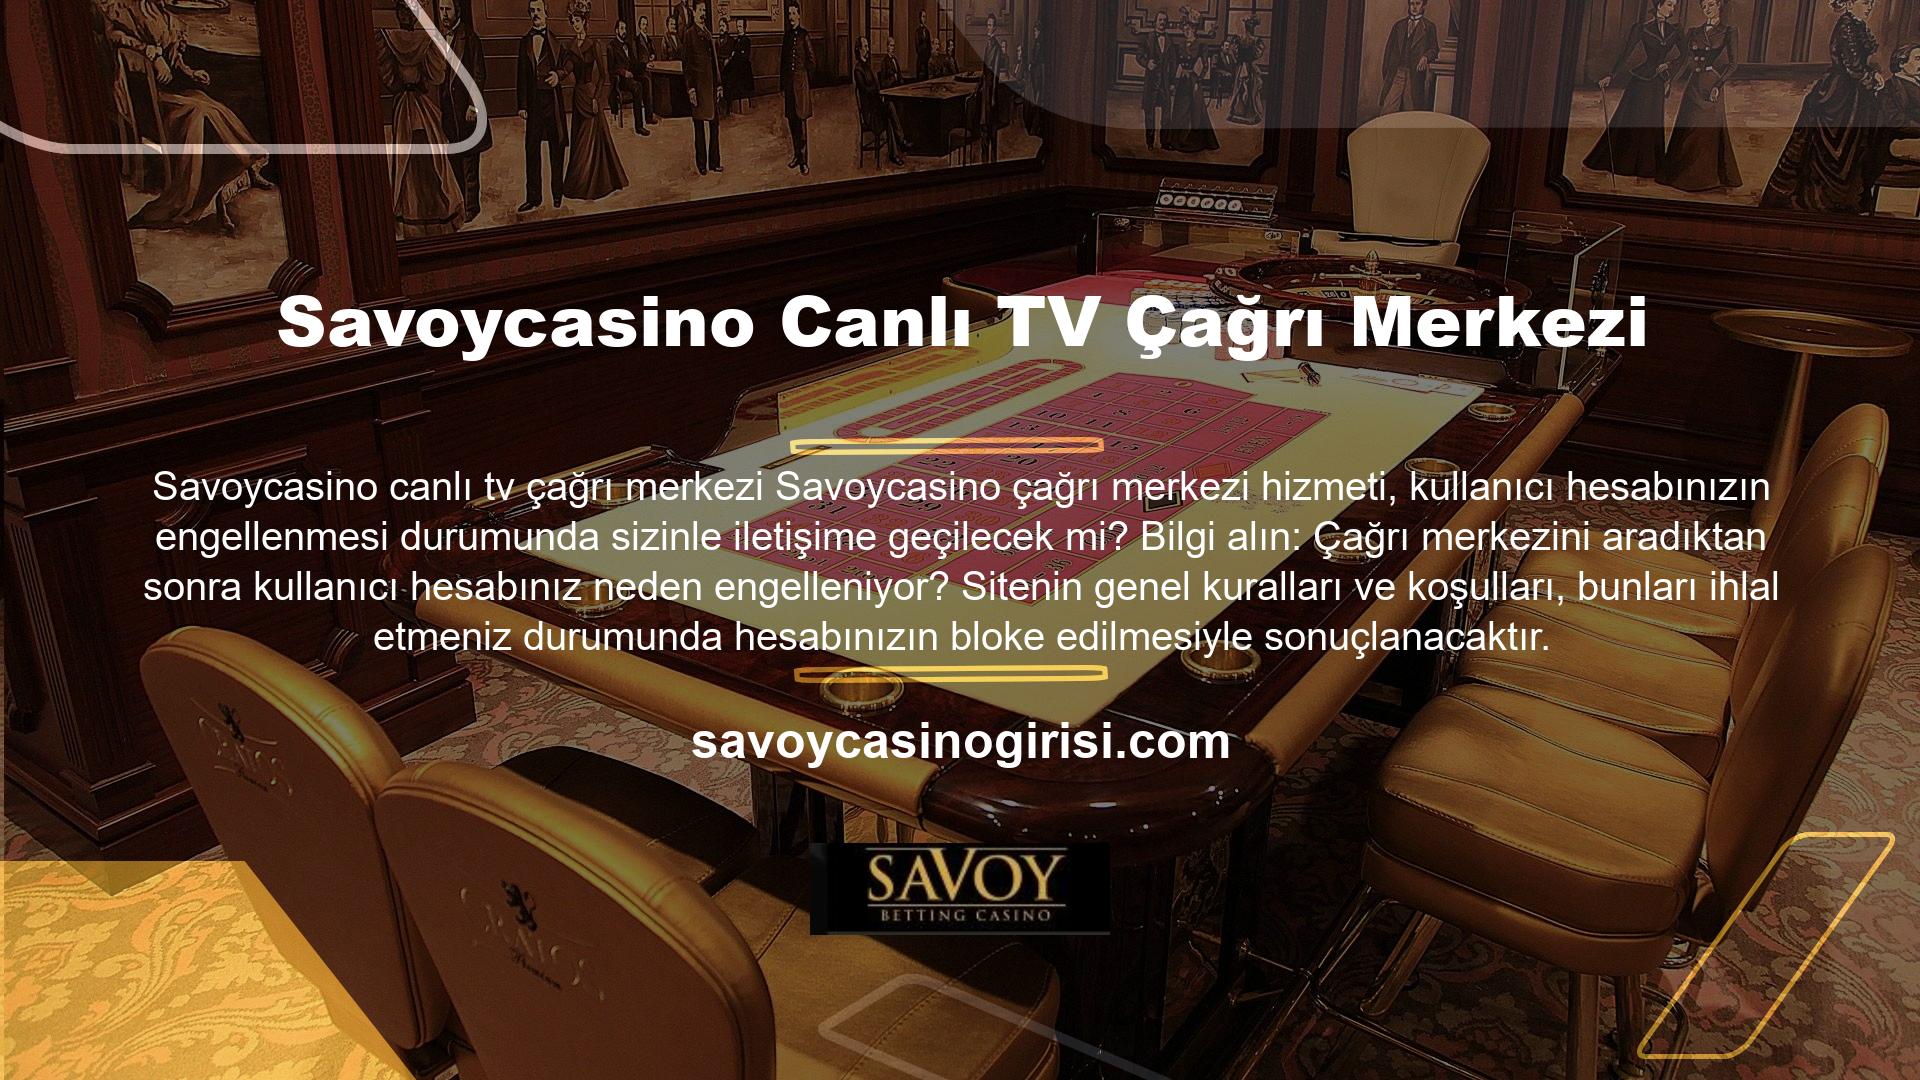 Kilidini açma süreci, Savoycasino canlı TV çağrı merkezi kurallarına uymayı gerektirir